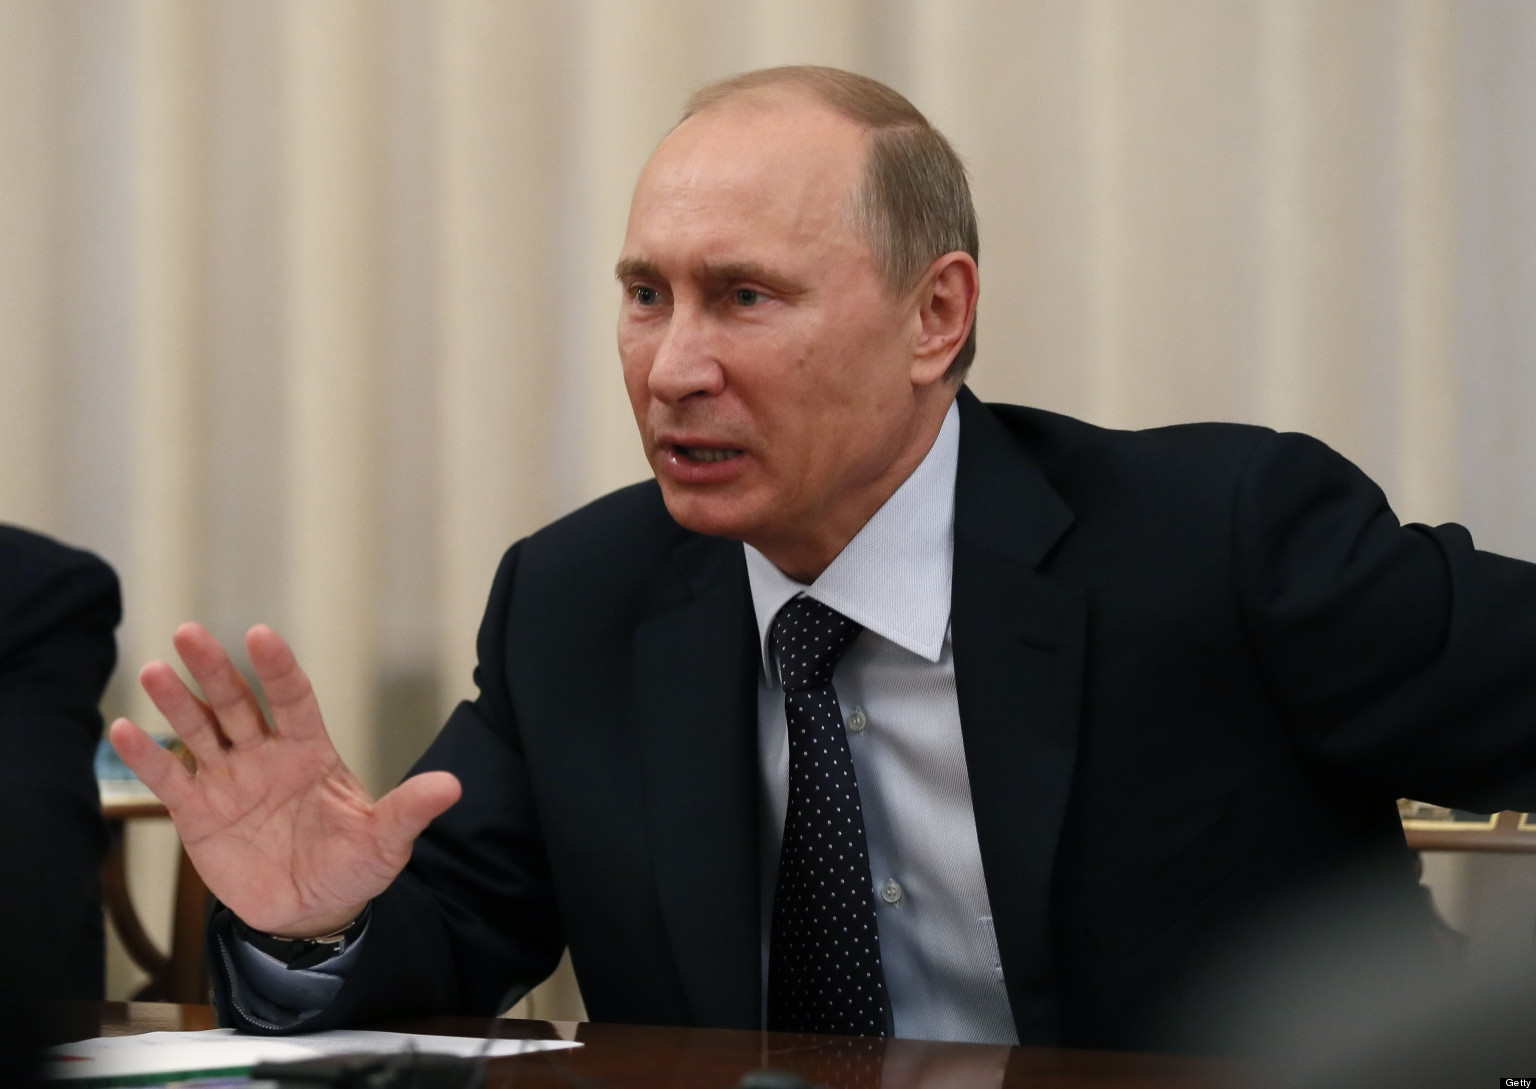 بوتين: لن يبقى أحد على قيد الحياة إذا ما اندلعت حرب بين روسيا وأمريكا